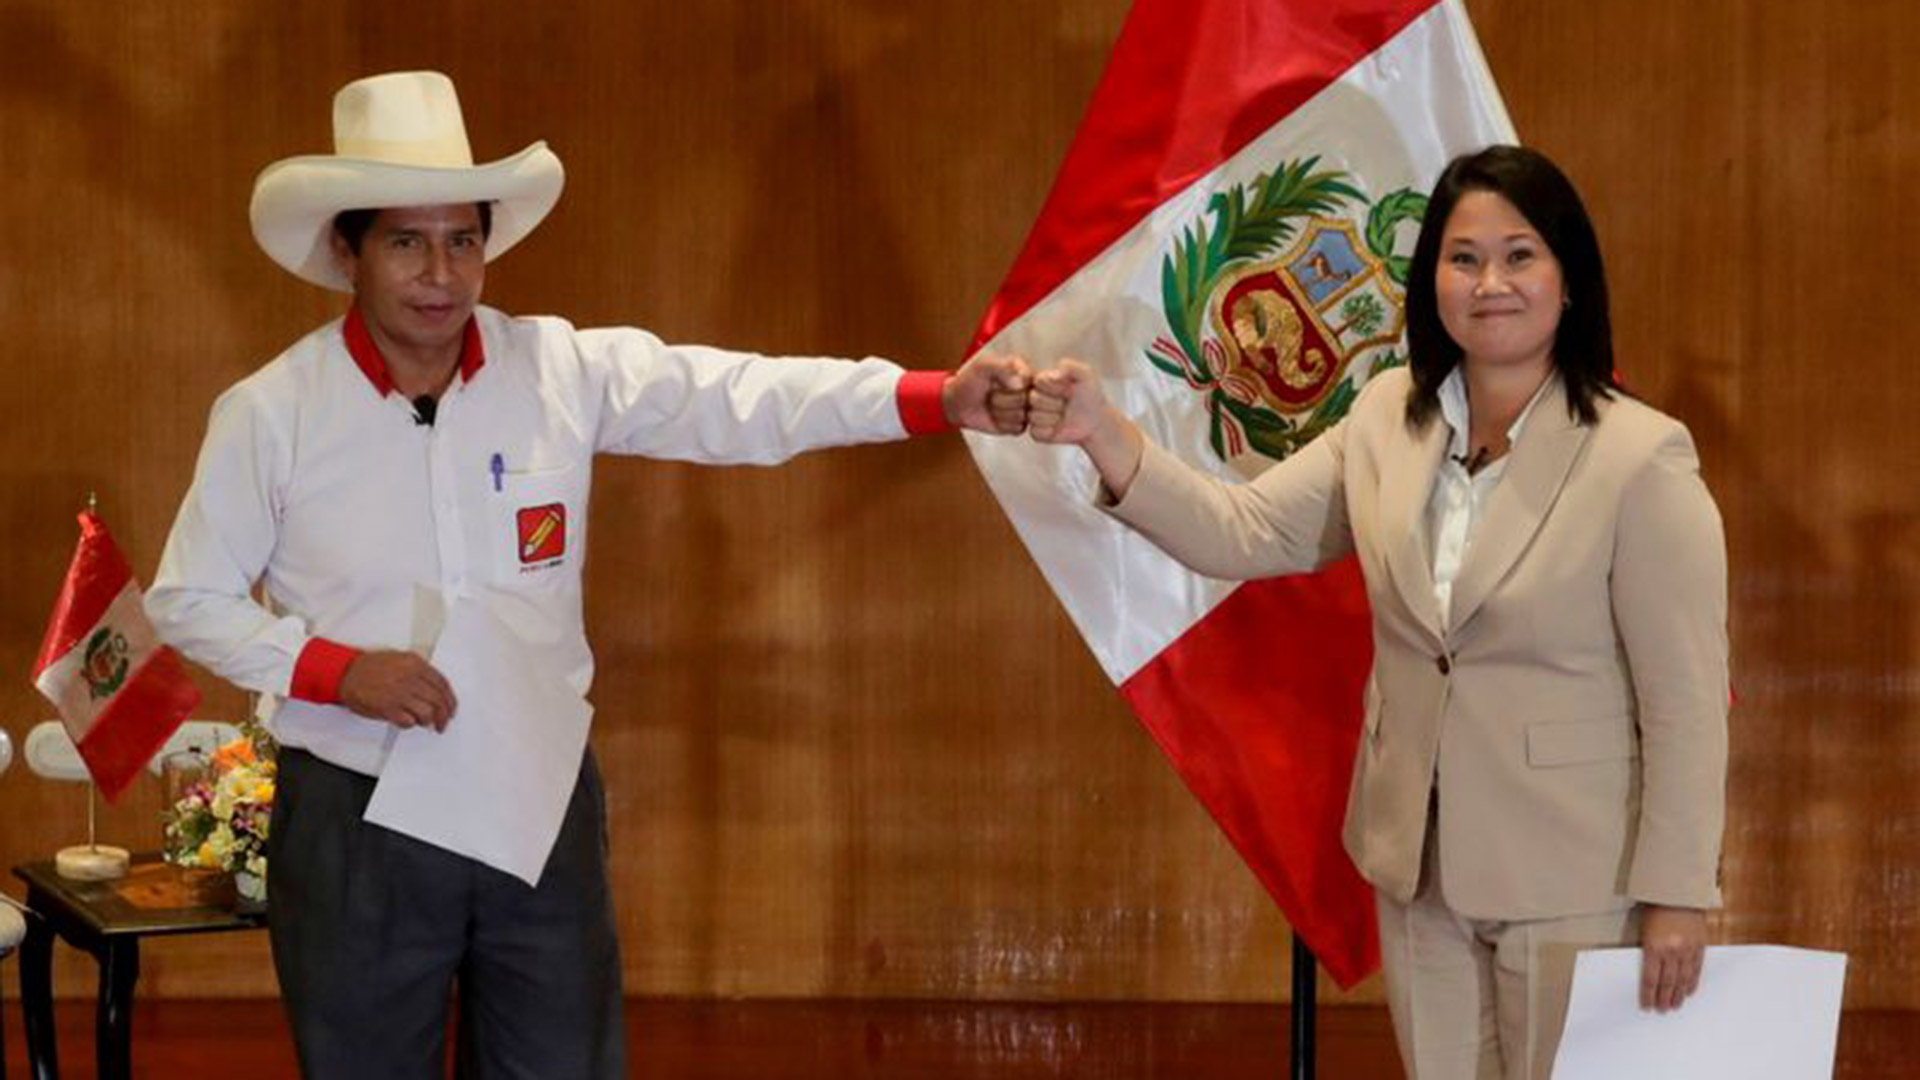 FOTO DE ARCHIVO: Los candidatos presidenciales peruanos Pedro Castillo y Keiko Fujimori, que se enfrentaron en una segunda vuelta, tras firmar un "Pacto por la Democracia", en Lima, Perú, el 17 de mayo de 2021. REUTERS/Sebastian Castaneda/